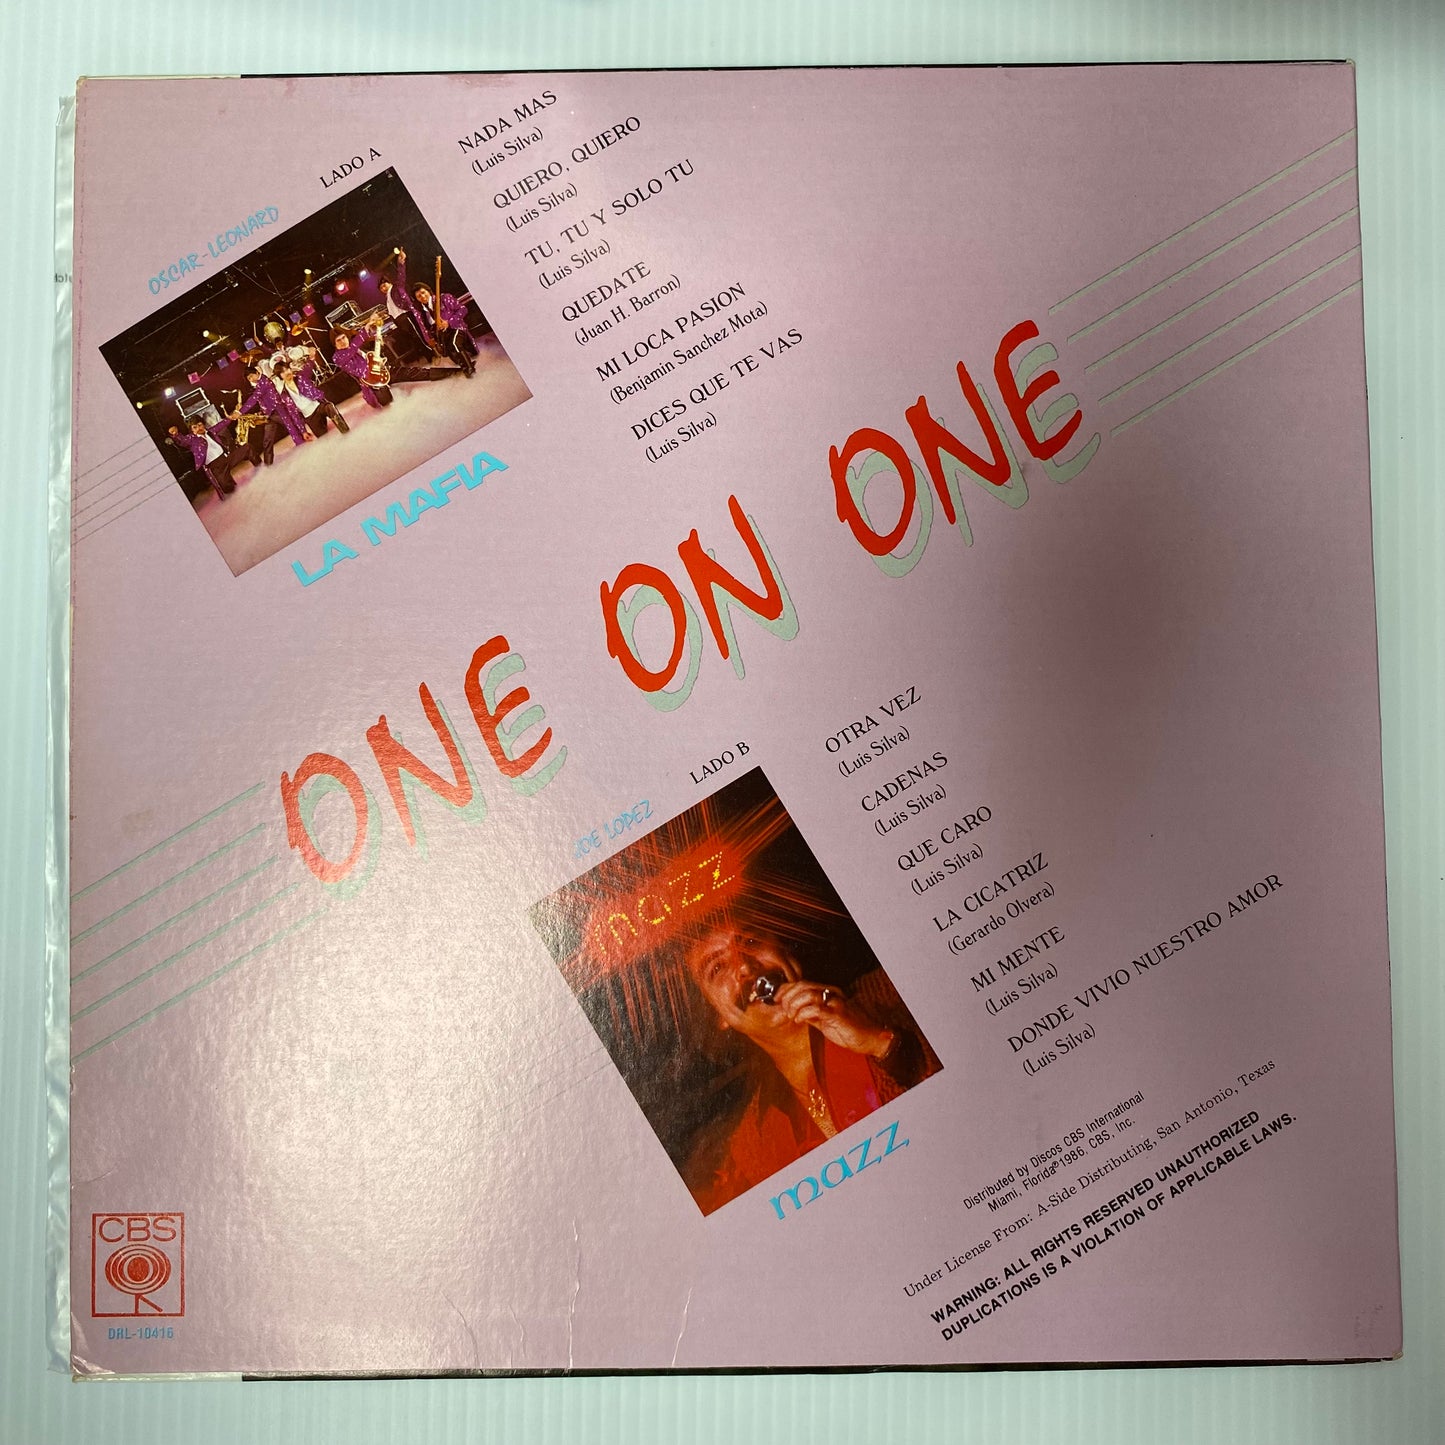 La Mafia & Joe Lopez - One On One (Open Vinyl)